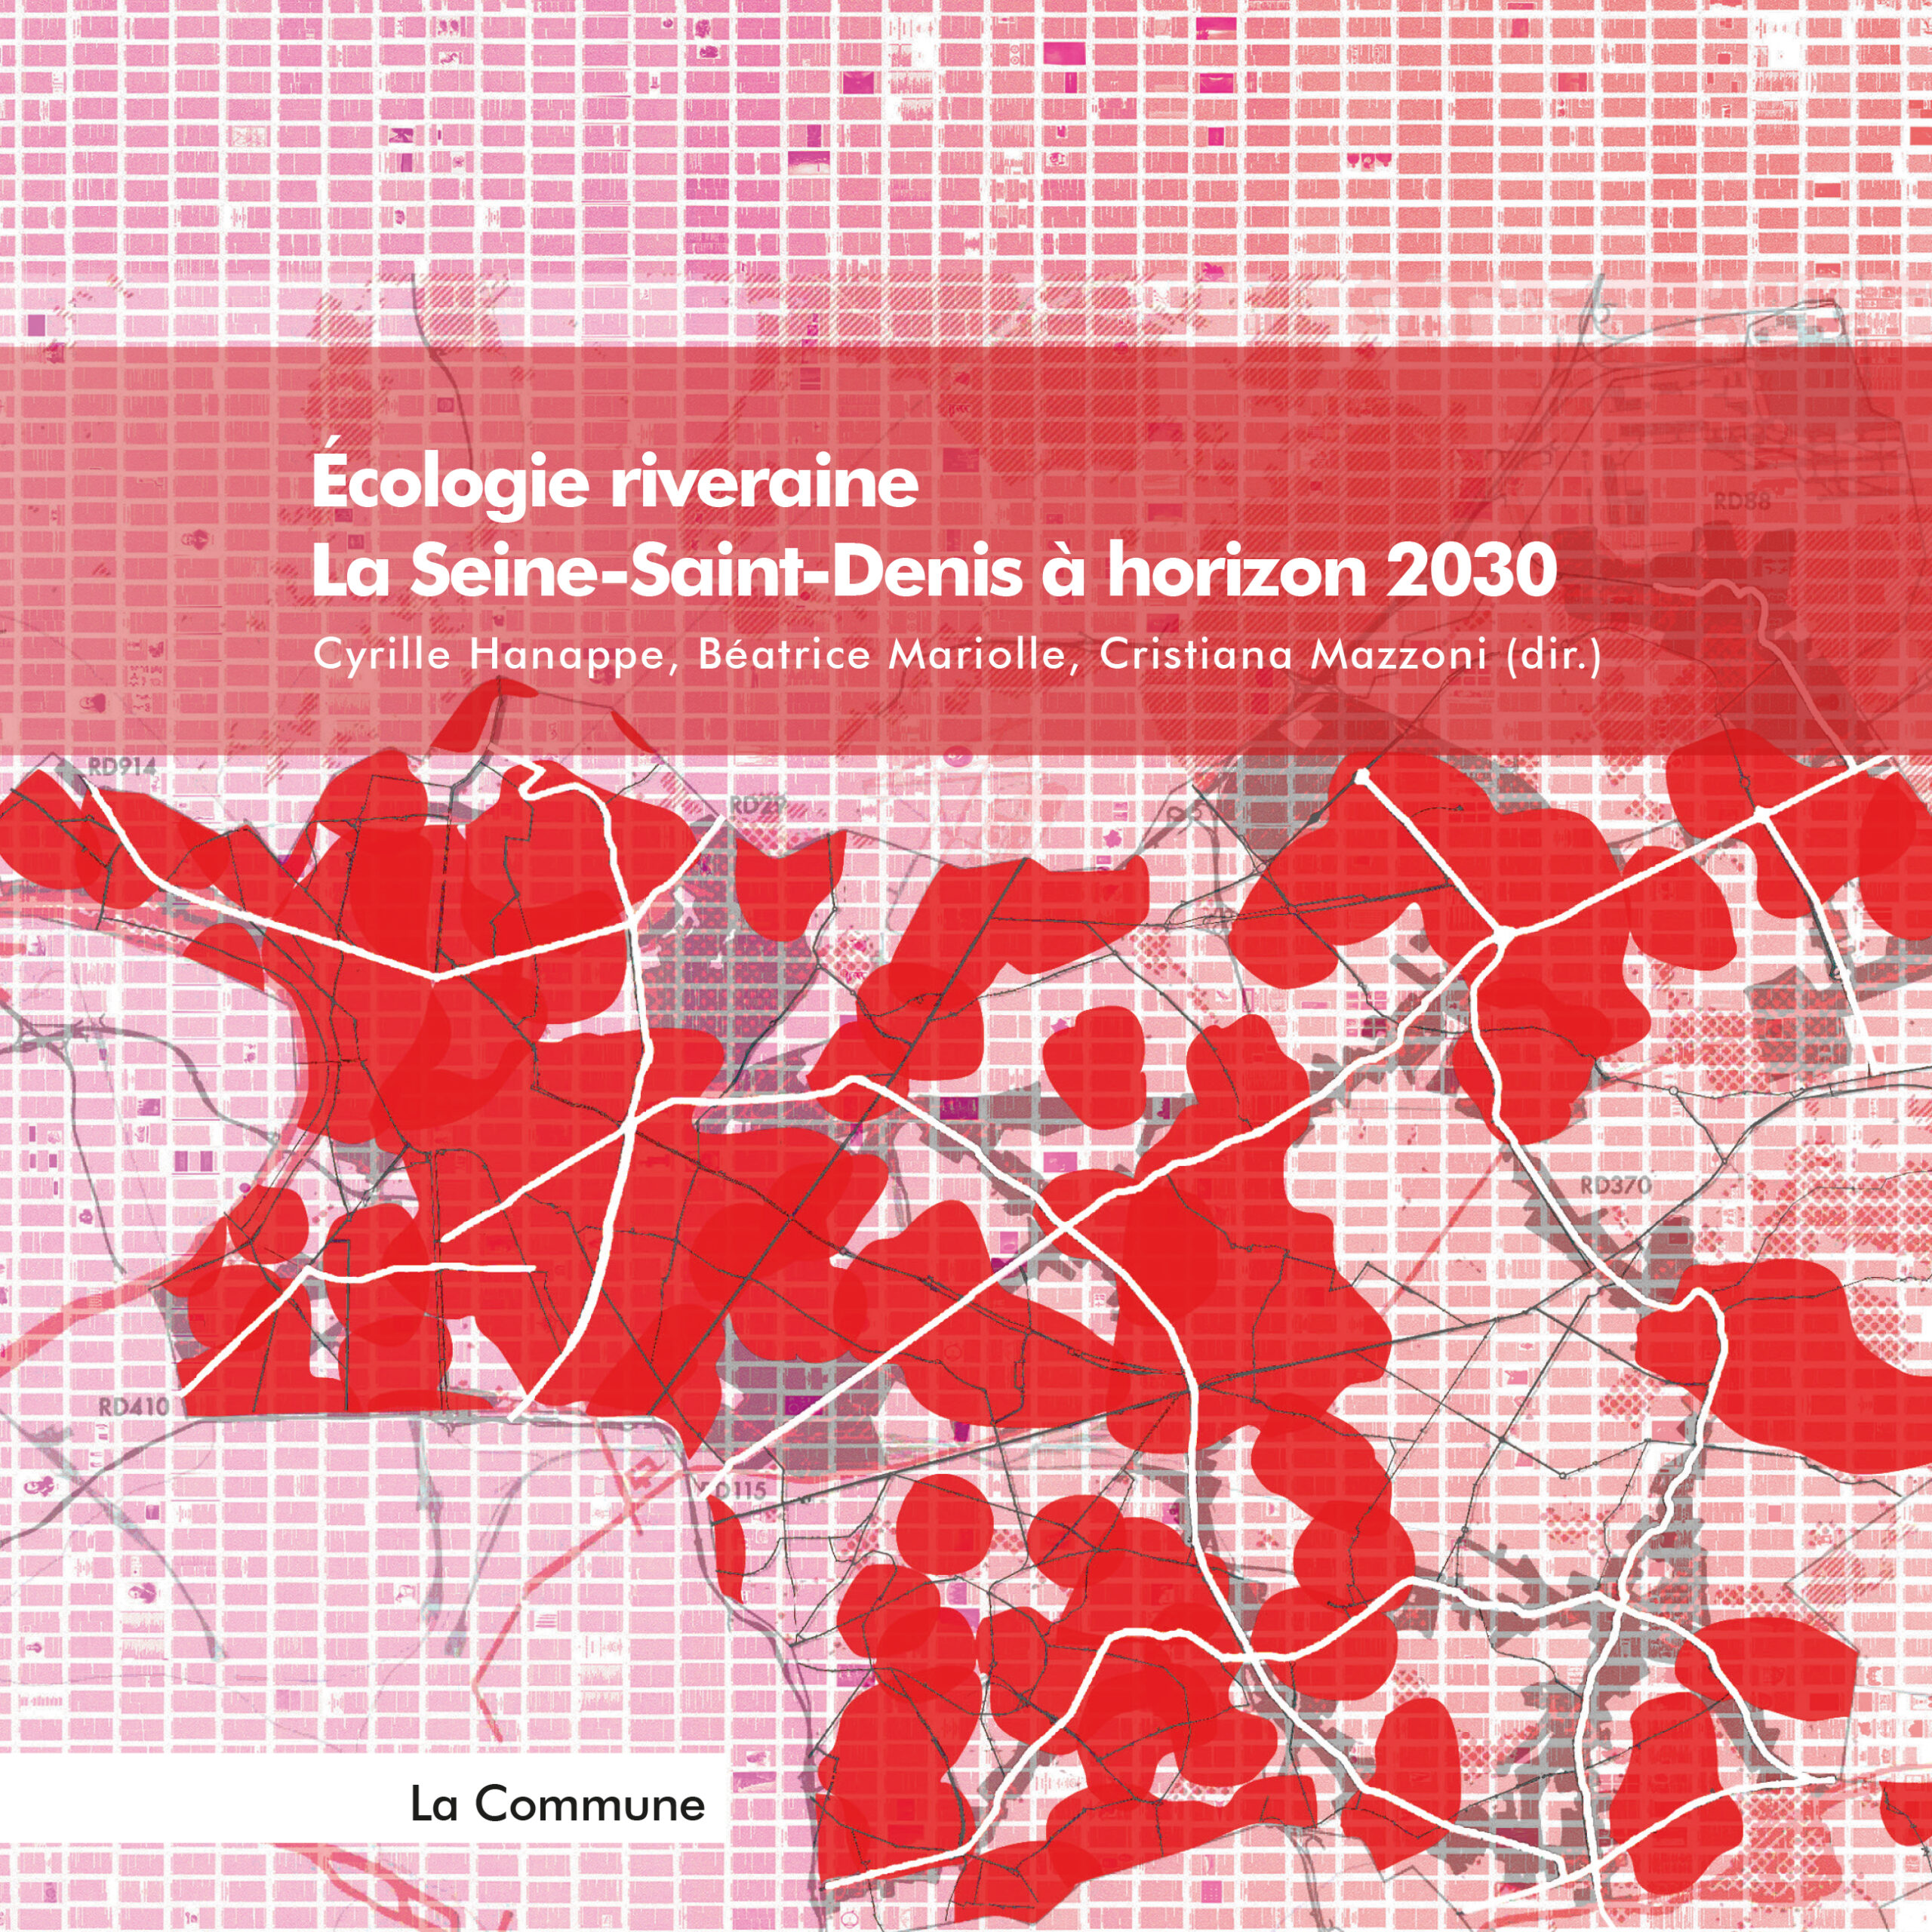 Publication – Écologie riveraine. La Seine-Saint-Denis à horizon 2030